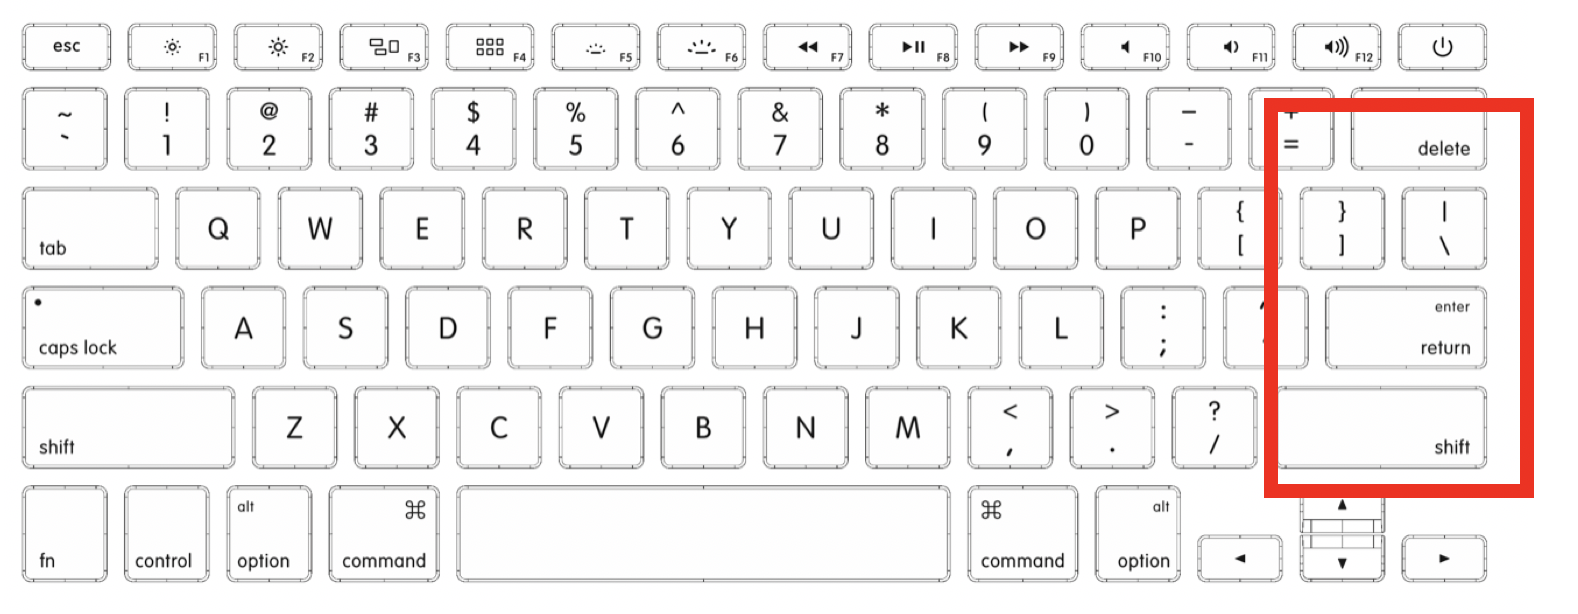 Macbookのオススメのキーボードカバーを知りたいかへ ホコリや汚れを防ぐ 透明orバックライト対応の紹介 マキログ